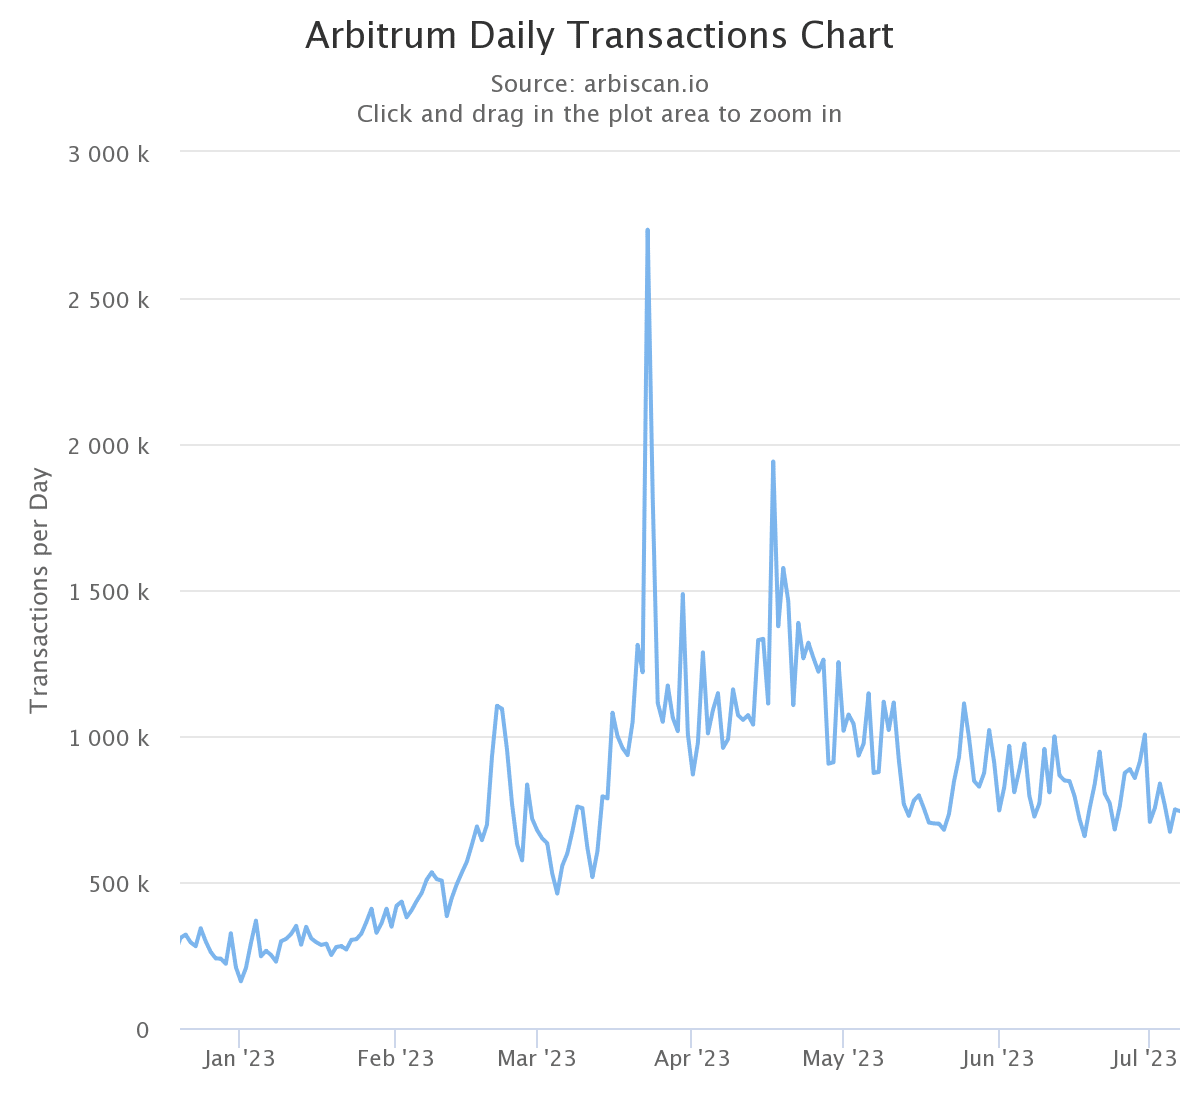 Điều gì khiến số lượng giao dịch Arbitrum giảm mạnh?